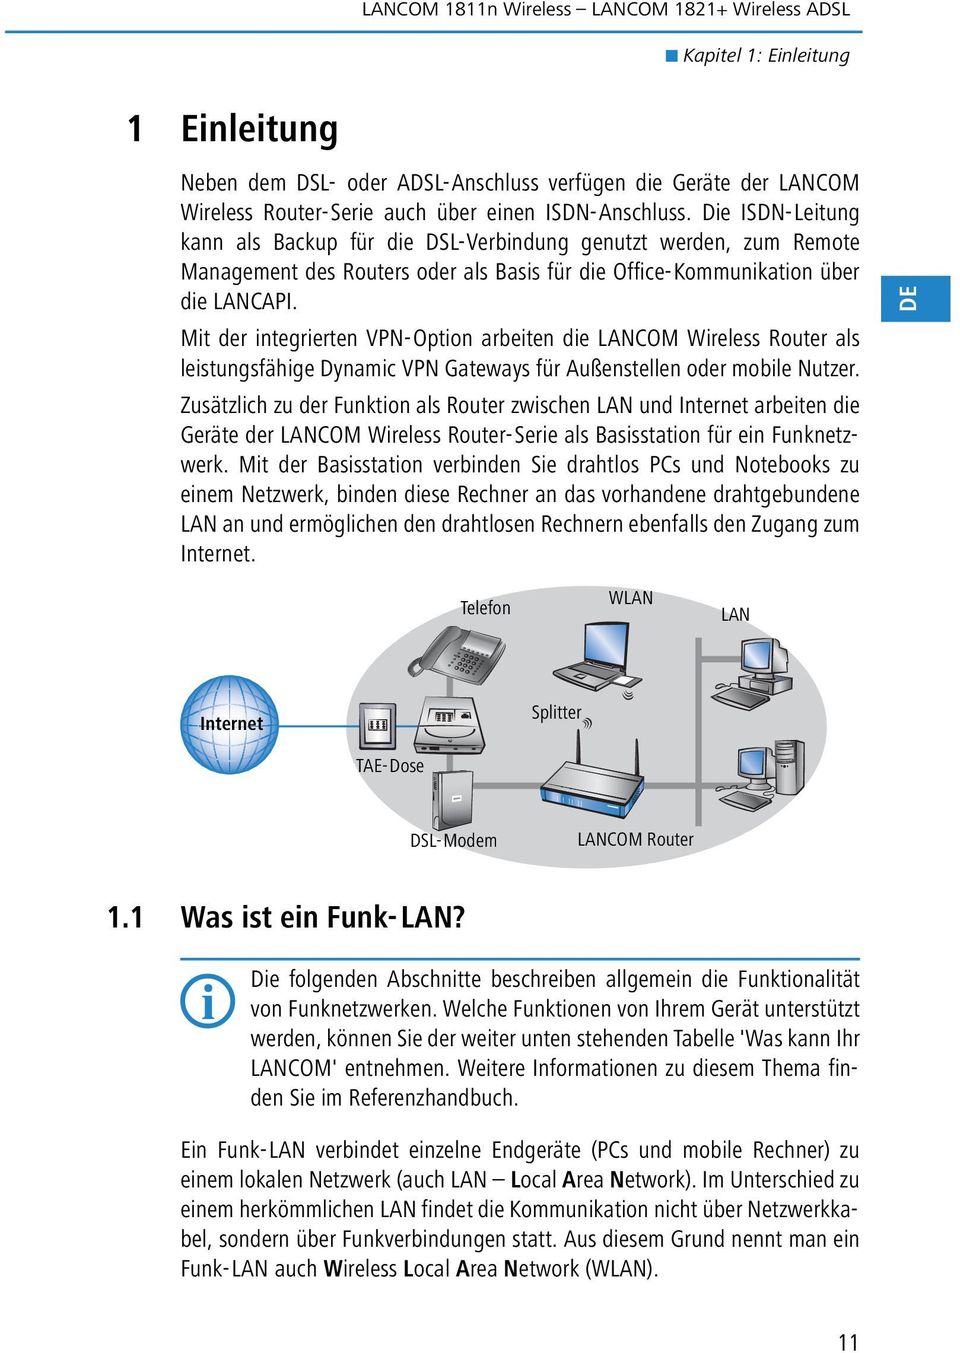 Mit der integrierten VPN-Option arbeiten die LANCOM Wireless Router als leistungsfähige Dynamic VPN Gateways für Außenstellen oder mobile Nutzer.